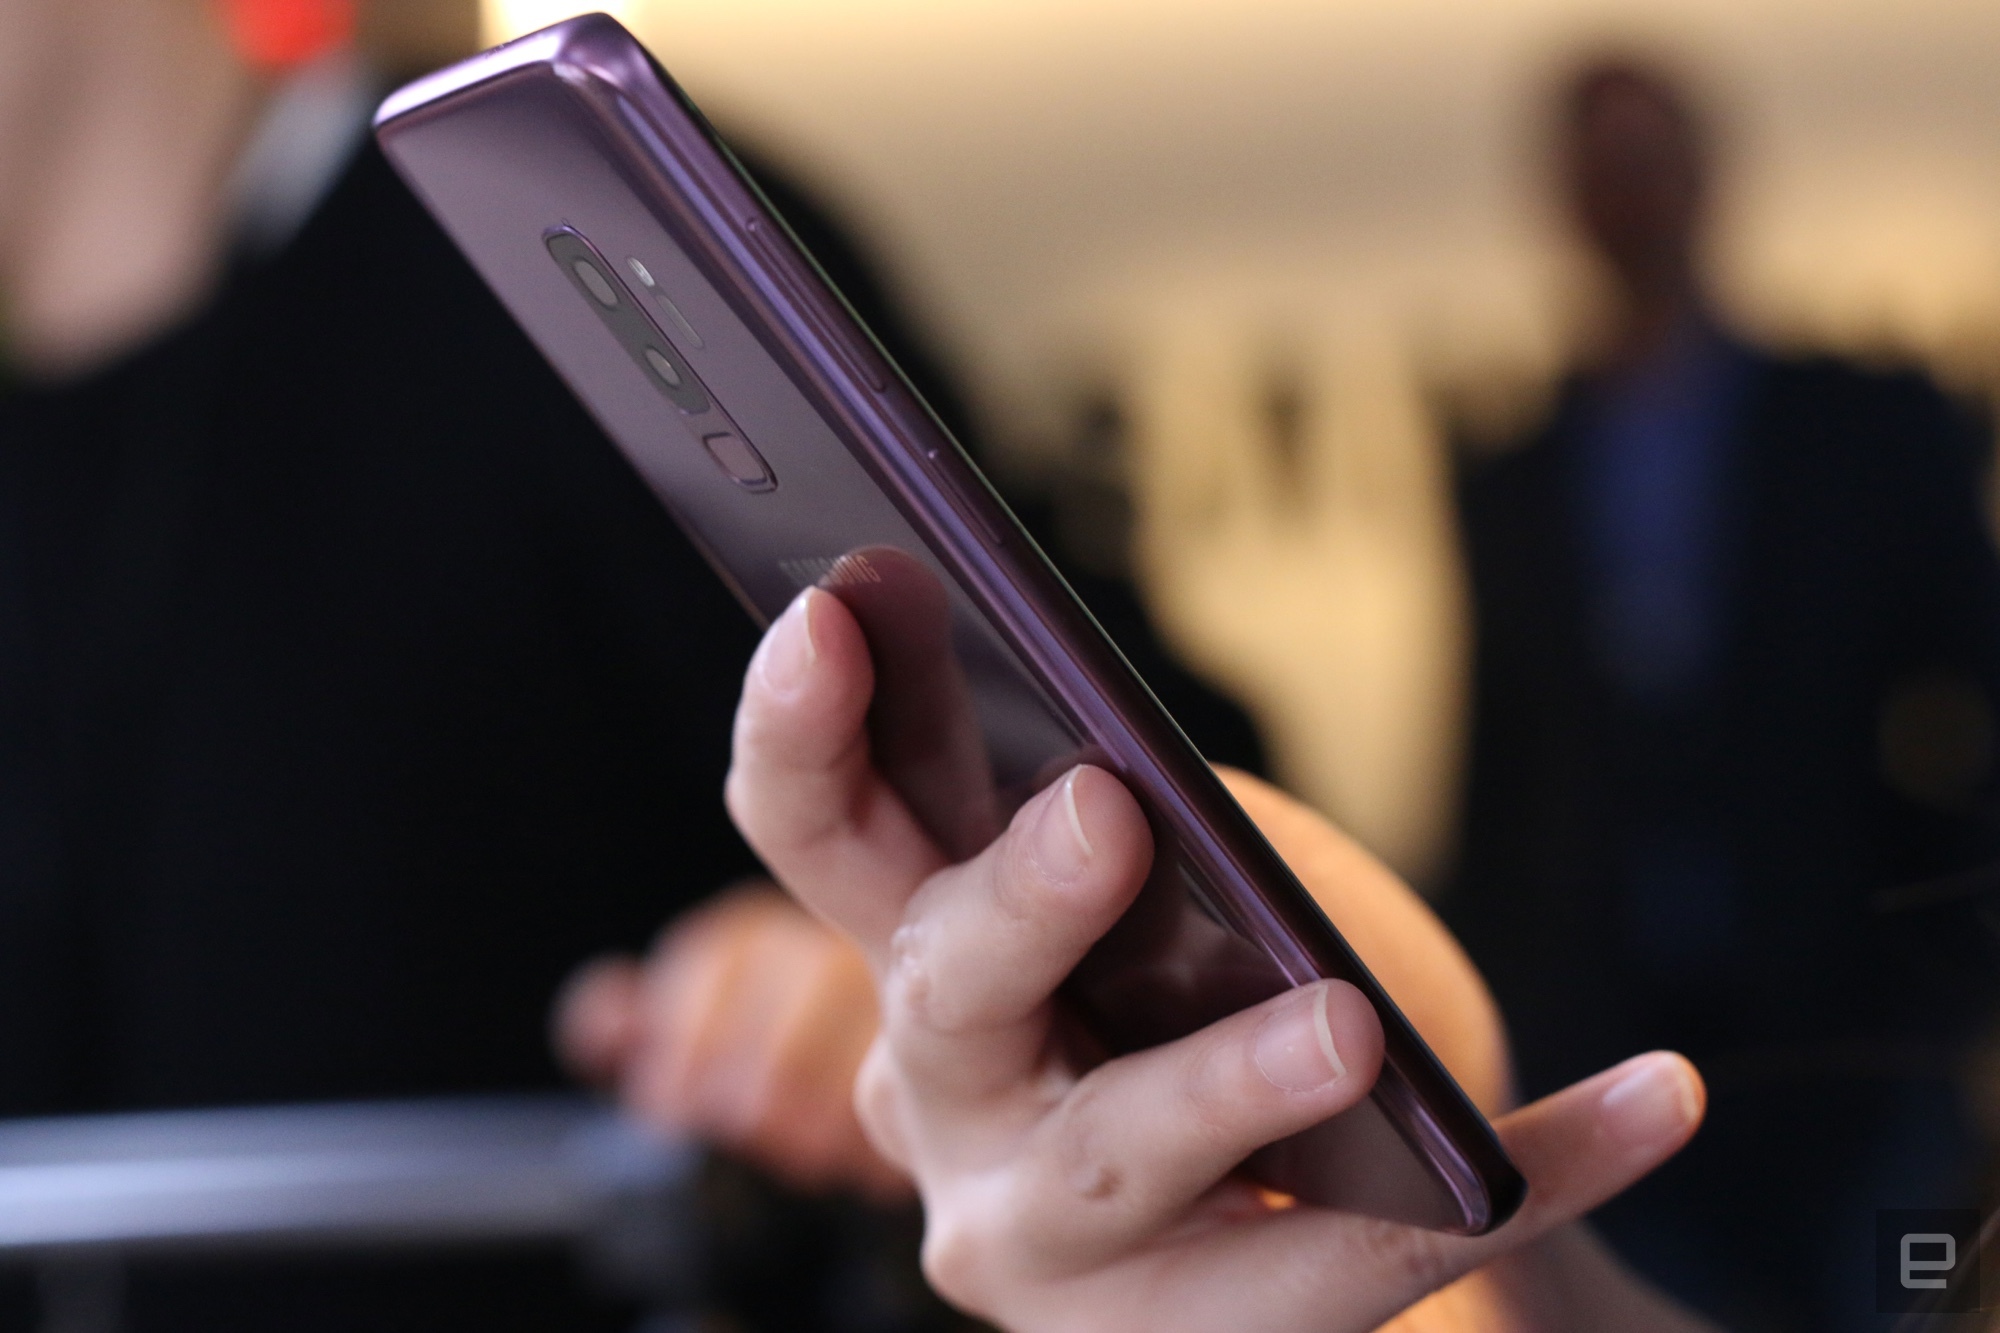 Cận cảnh Galaxy S9/S9+:
Thiết kế thay đổi nhỏ, trải nghiệm tốt hơn nhiều